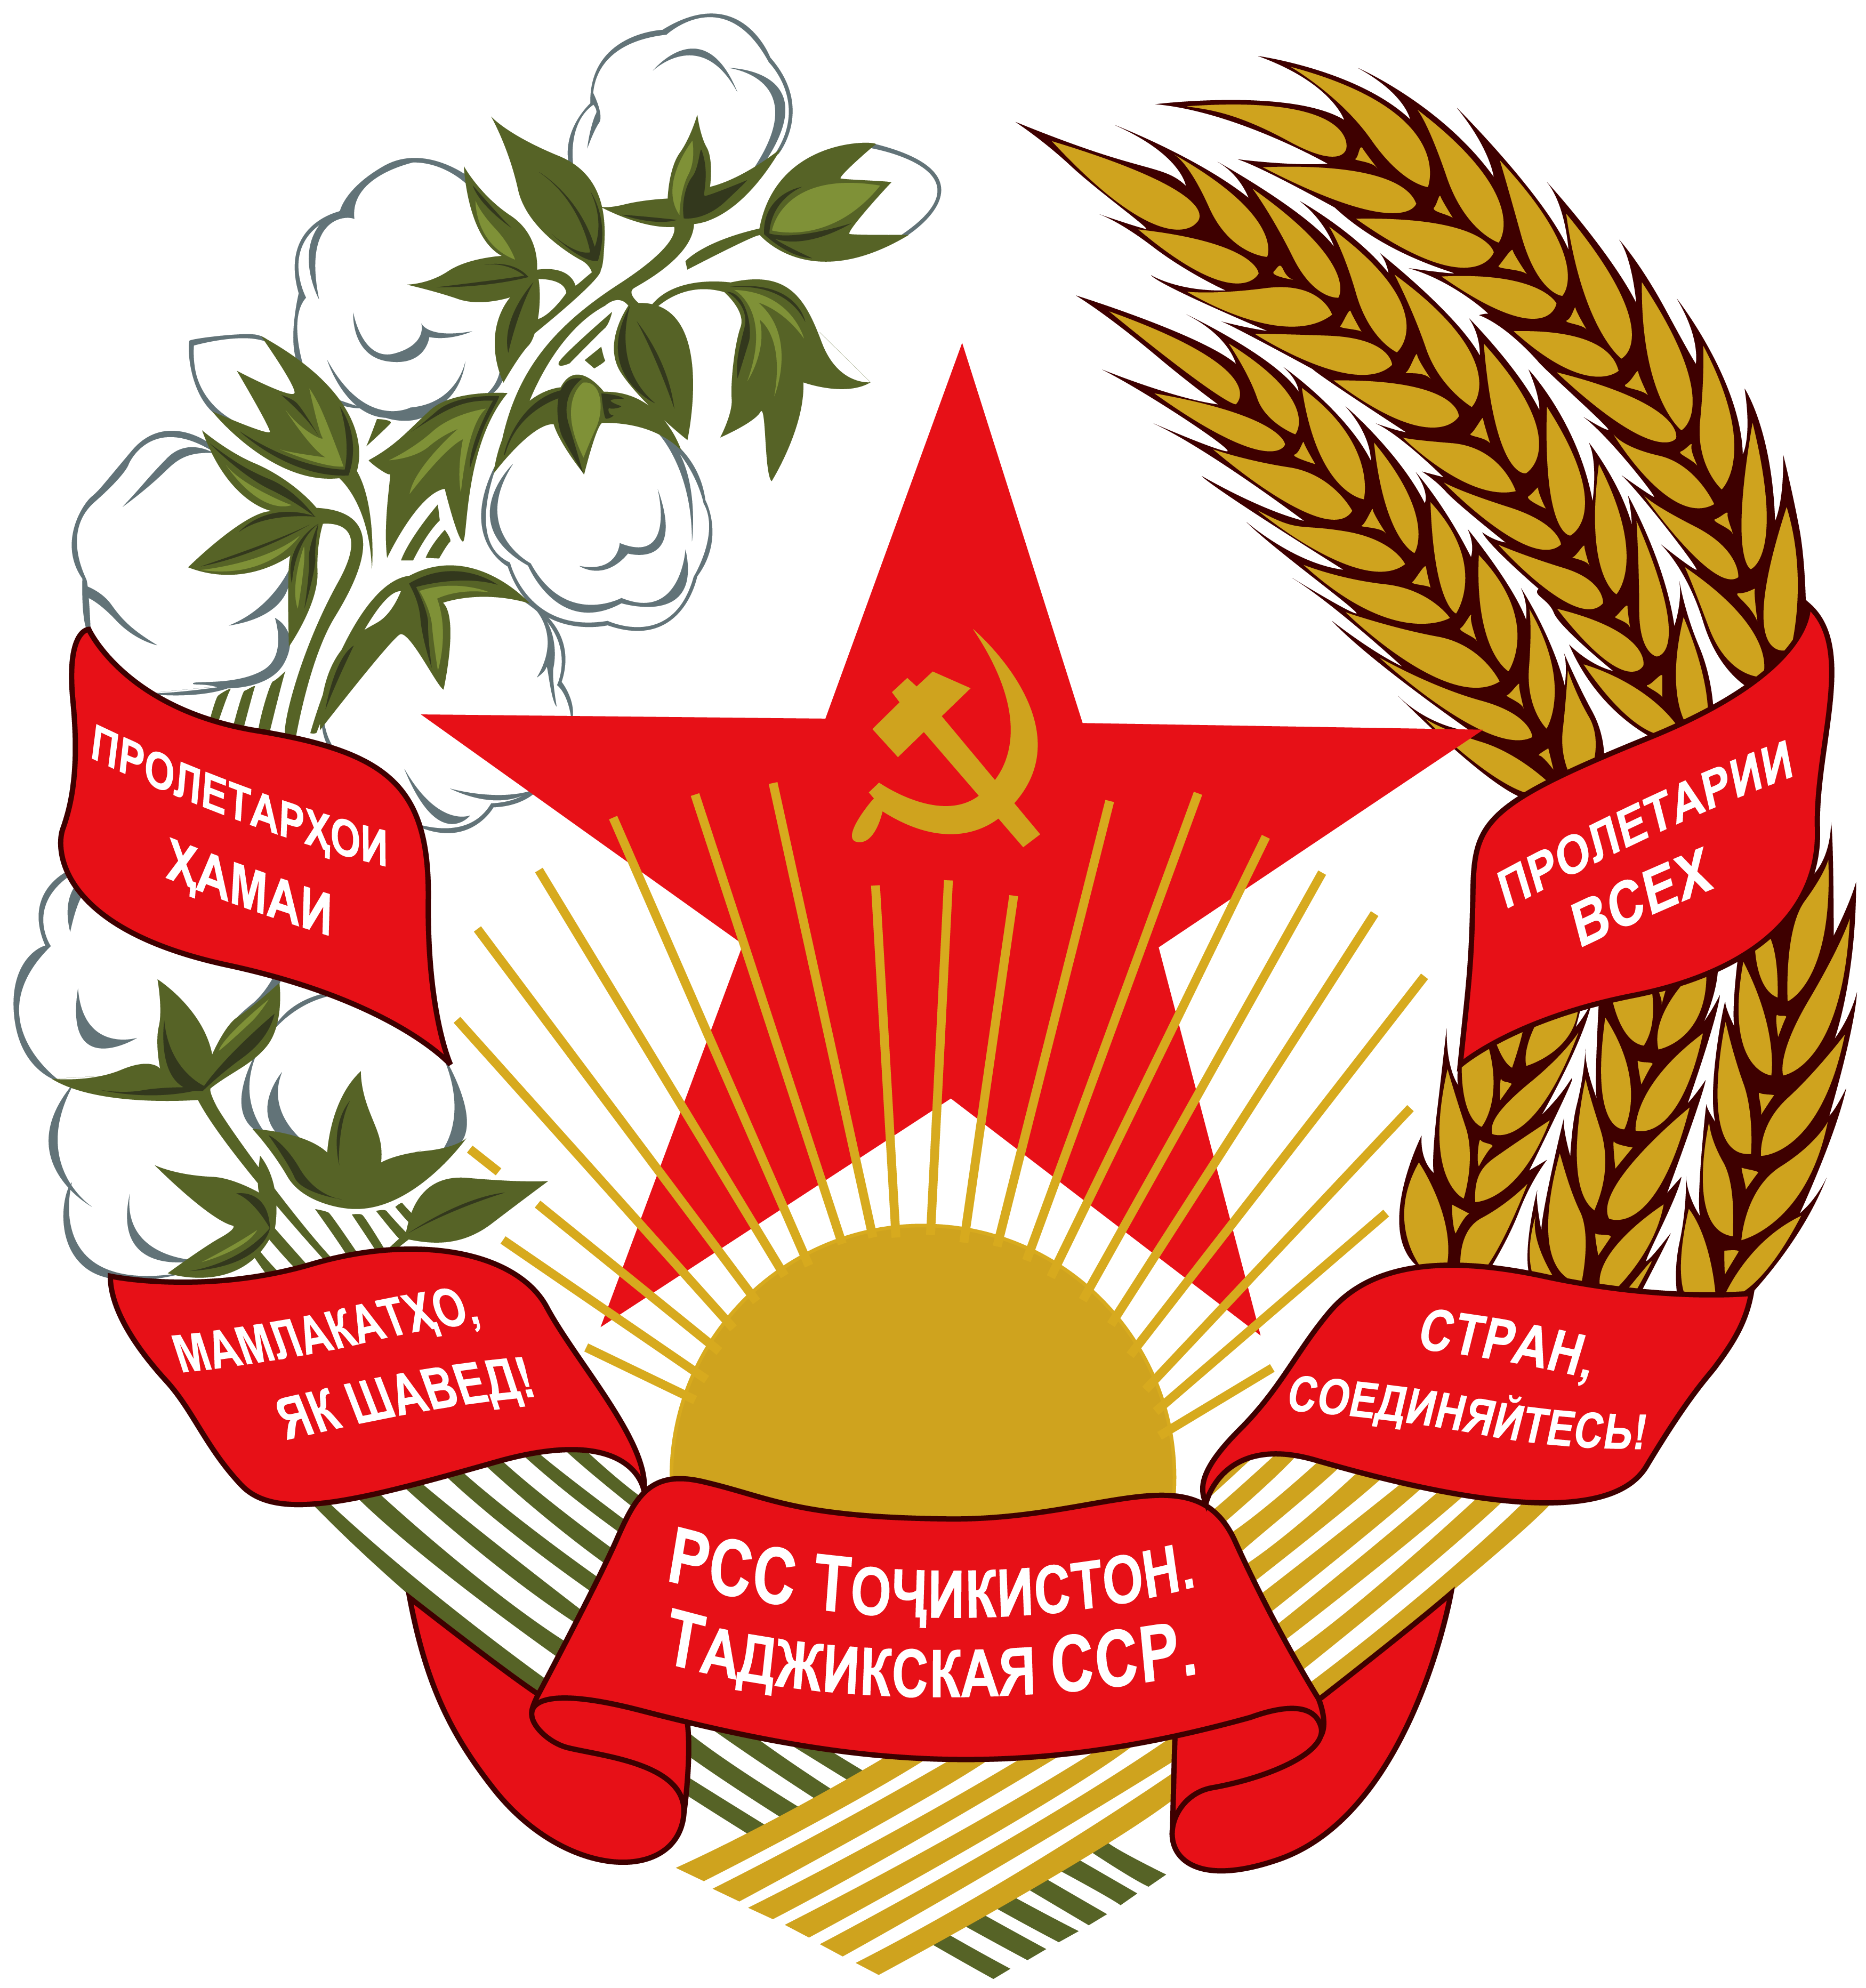 塔吉克蘇聯時期國徽